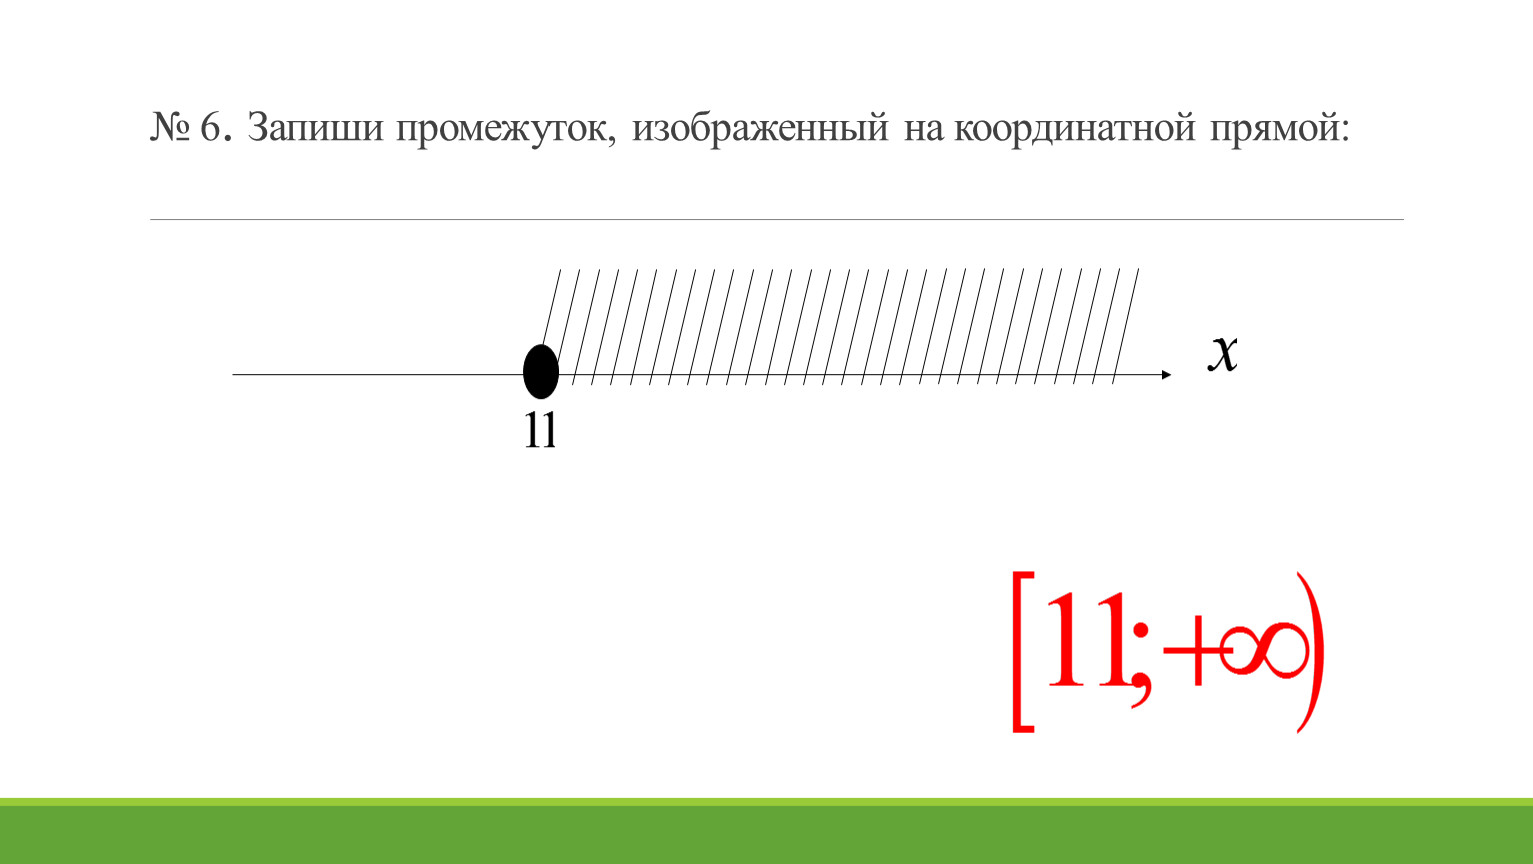 Запишите промежуток изображенный на координатной прямой. Изобразите на координатной прямой промежуток. Изобразите на координатной прямой промежуток -3 2. Изобразите на координатной прямой промежуток -2 <x<9.